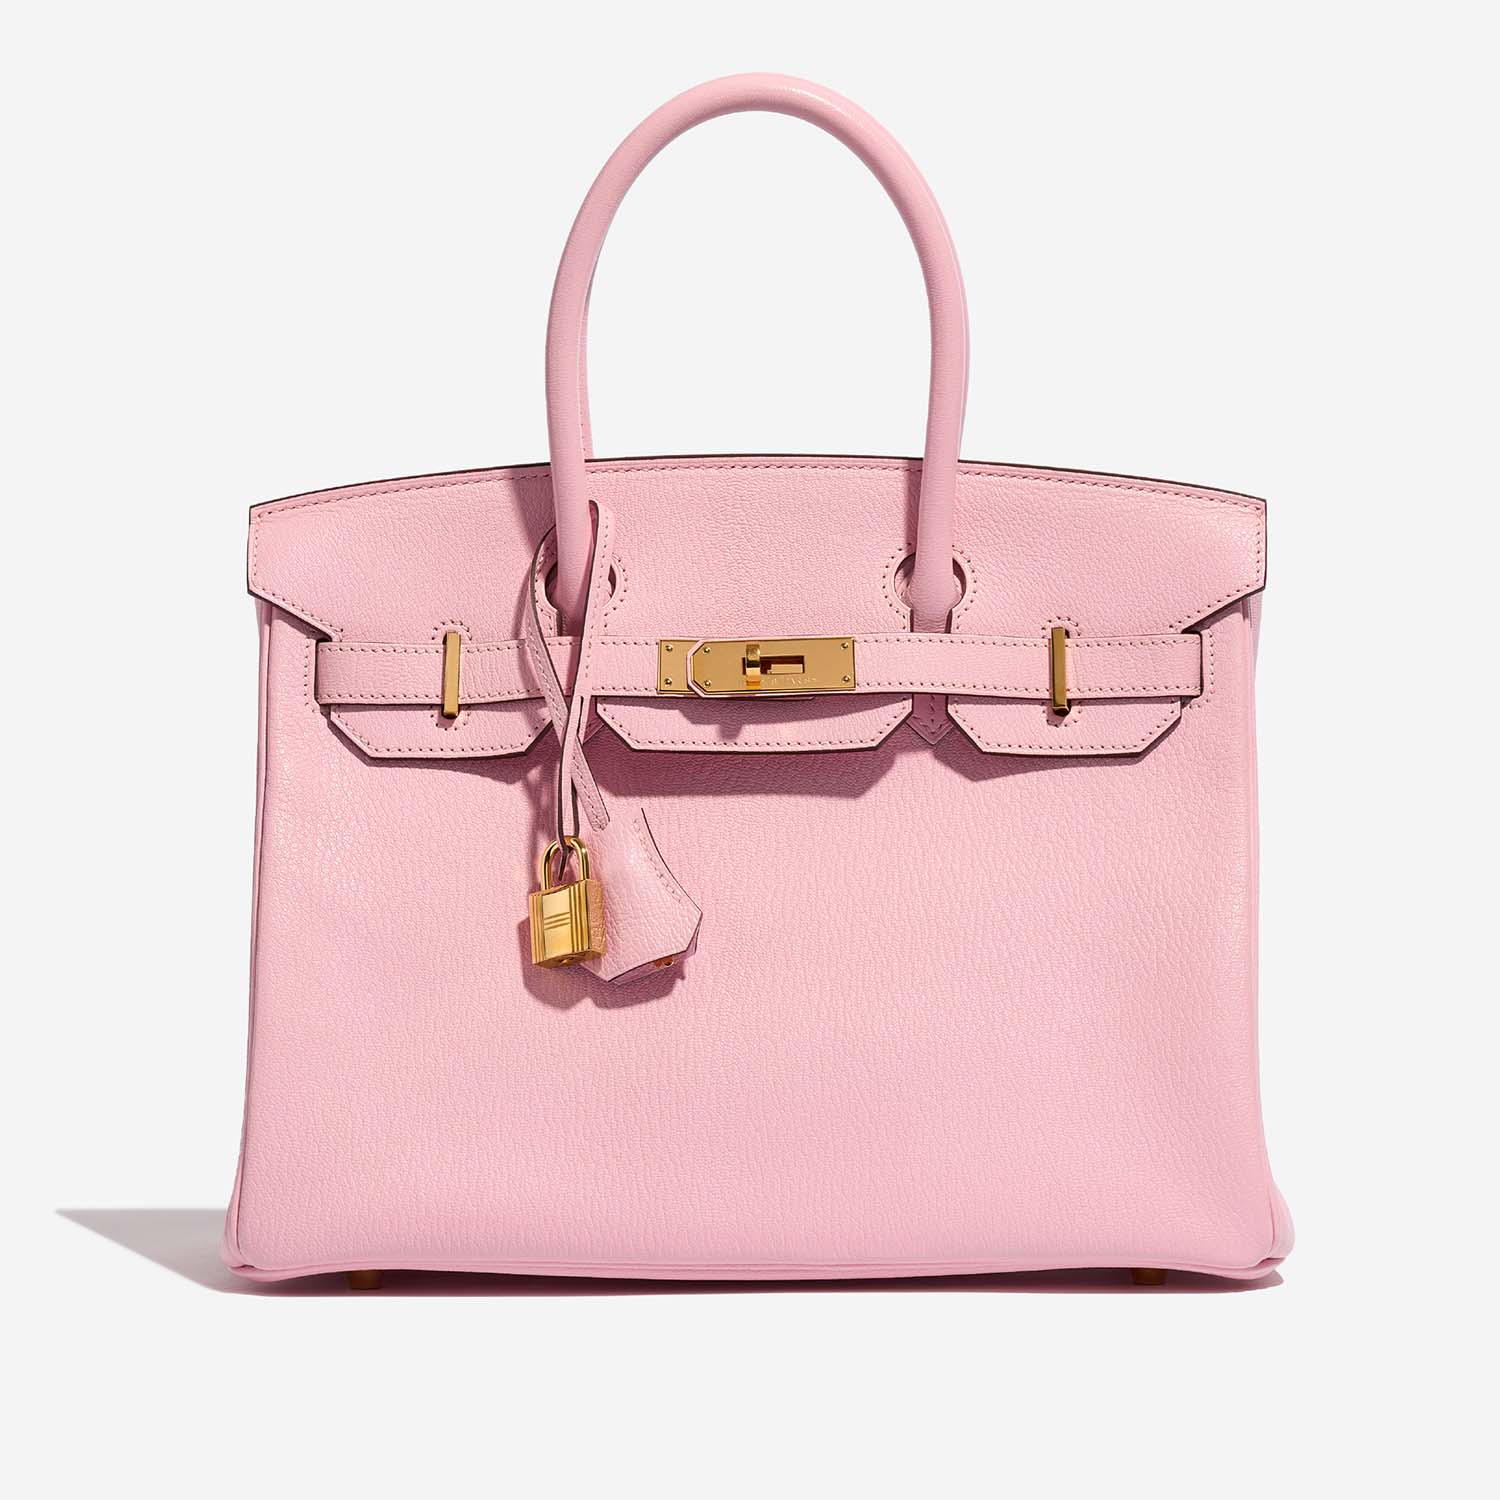 Hermès Birkin 30 roseSakura Front | Verkaufen Sie Ihre Designer-Tasche auf Saclab.com